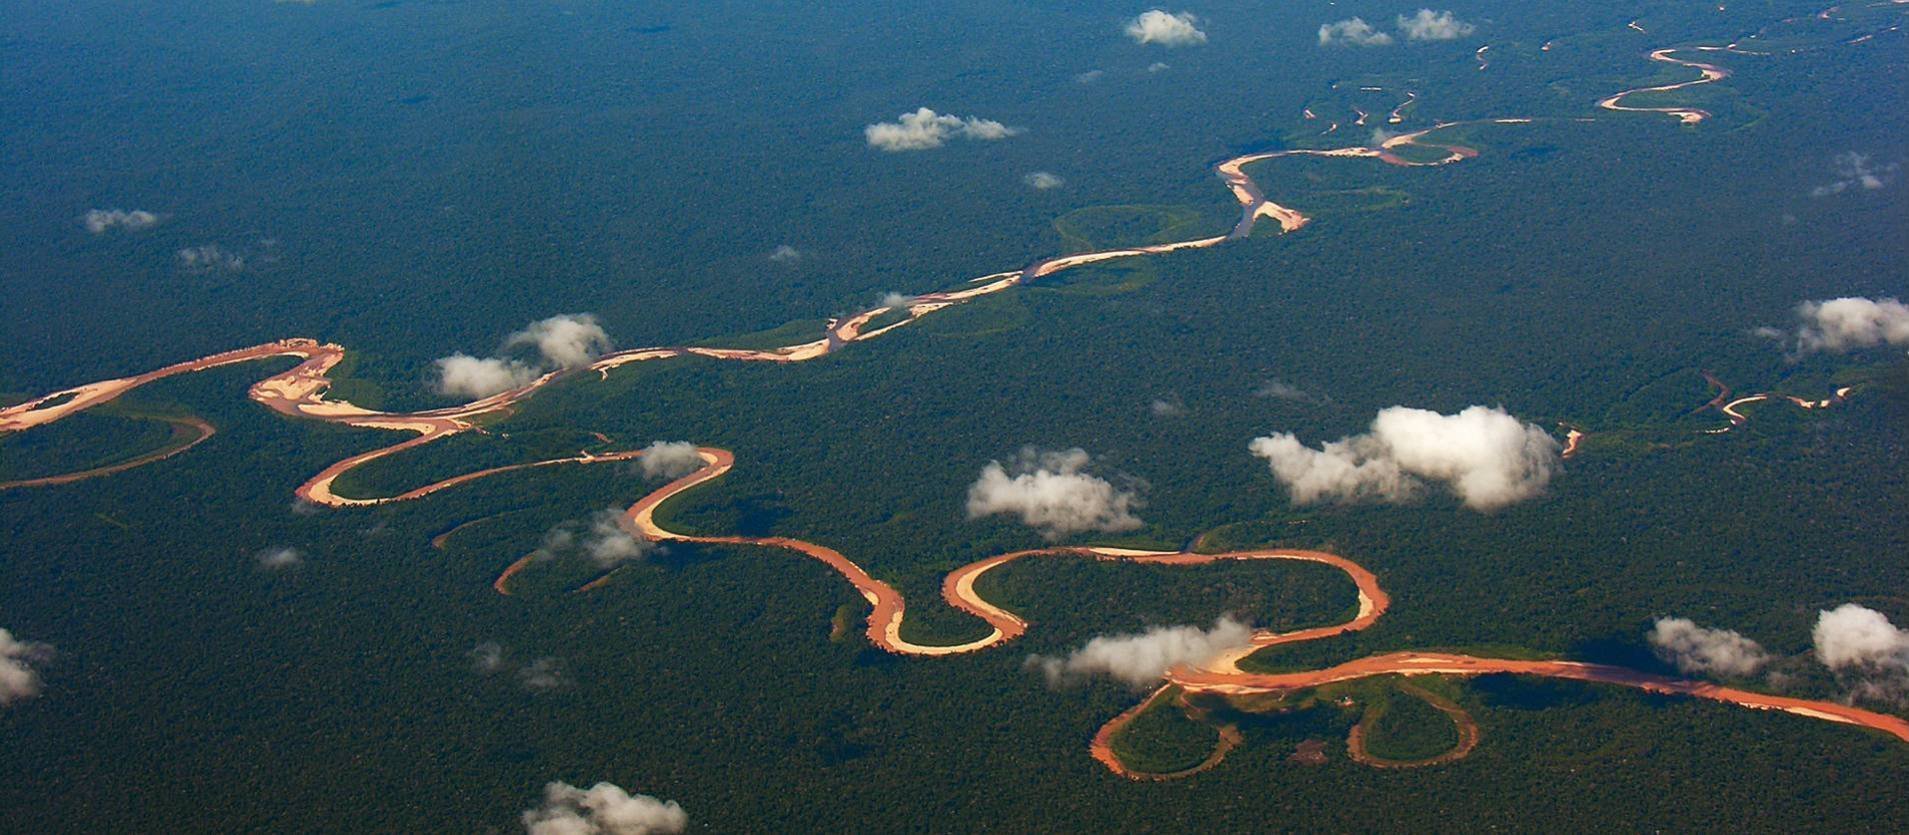 Амазонка какое устье. Бразилия Амазонская низменность. Амазонка река Укаяли. Исток реки Амазонка. Река Укаяли Перу.